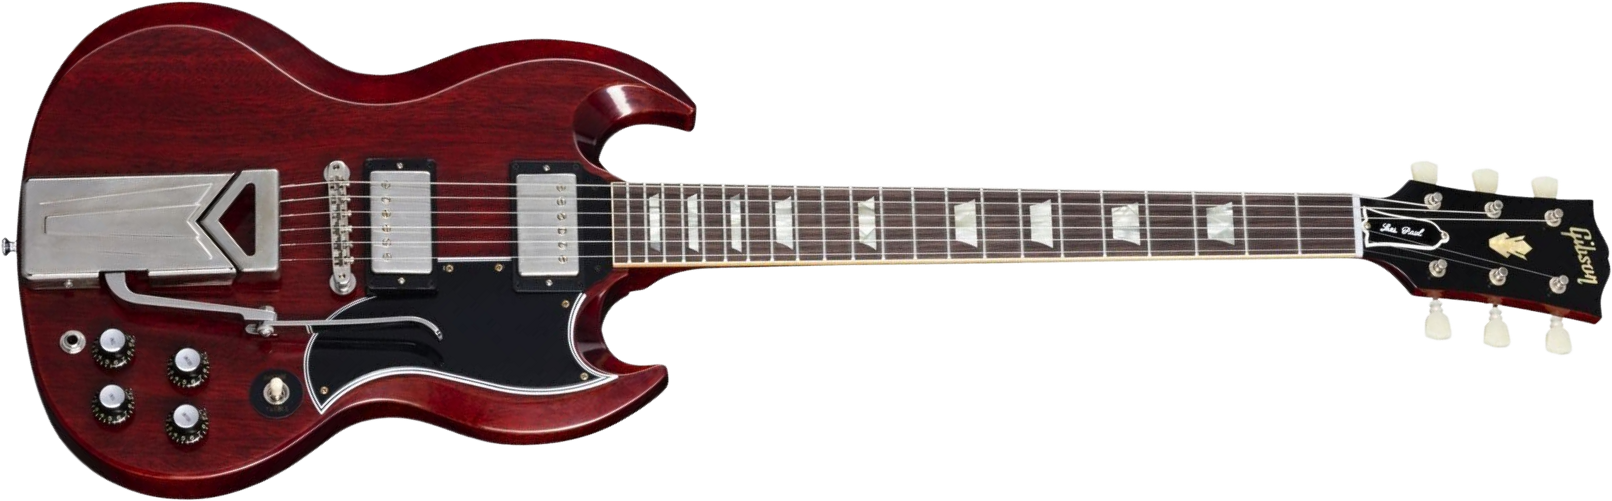 Gibson Sg Les Paul 1961 60th Ann. 2h Trem Rw - Vos Cherry Red - Guitare Électrique Double Cut - Main picture